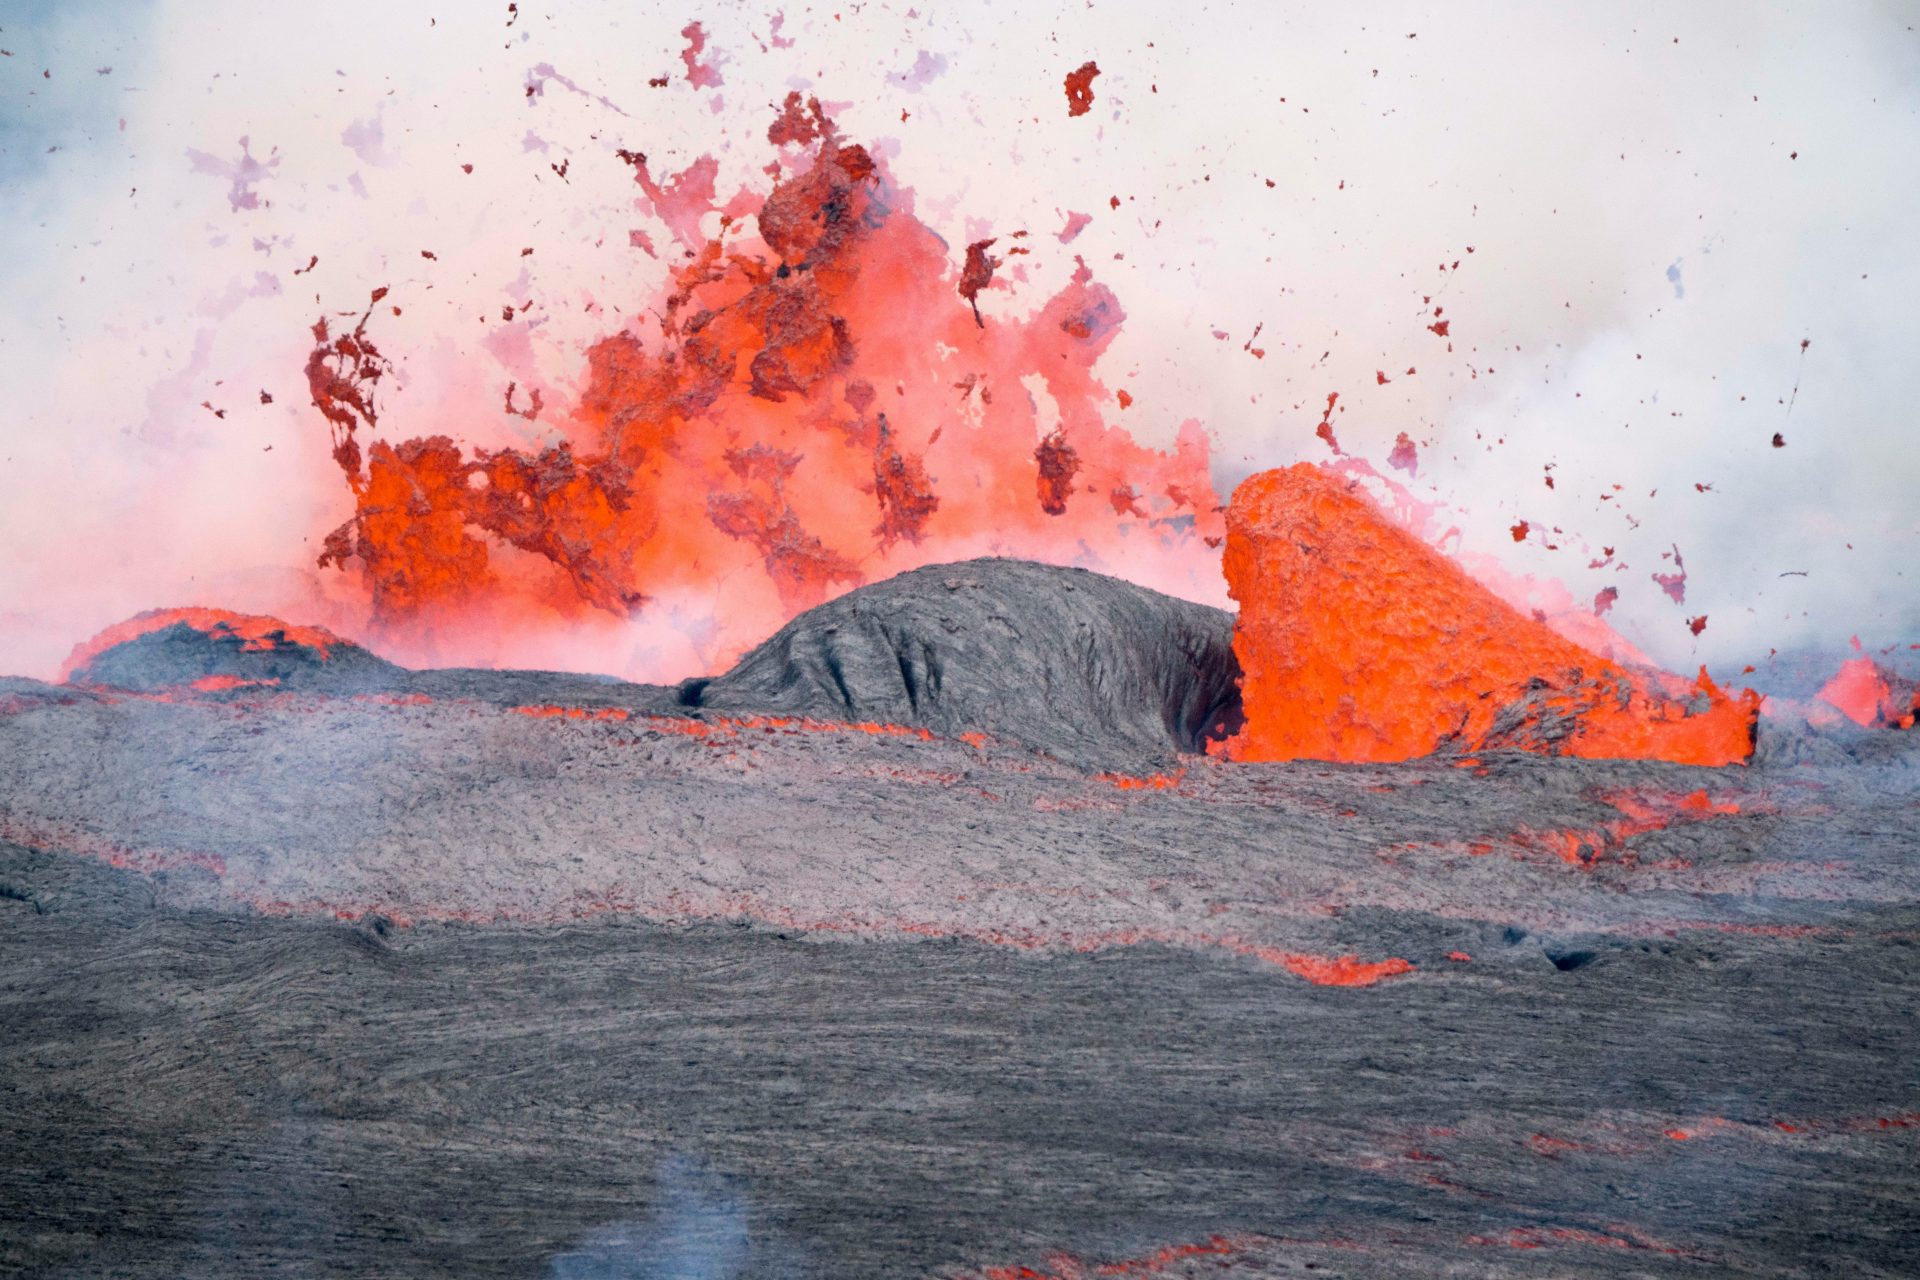 Productos químicos influenciados por la roca volcánica